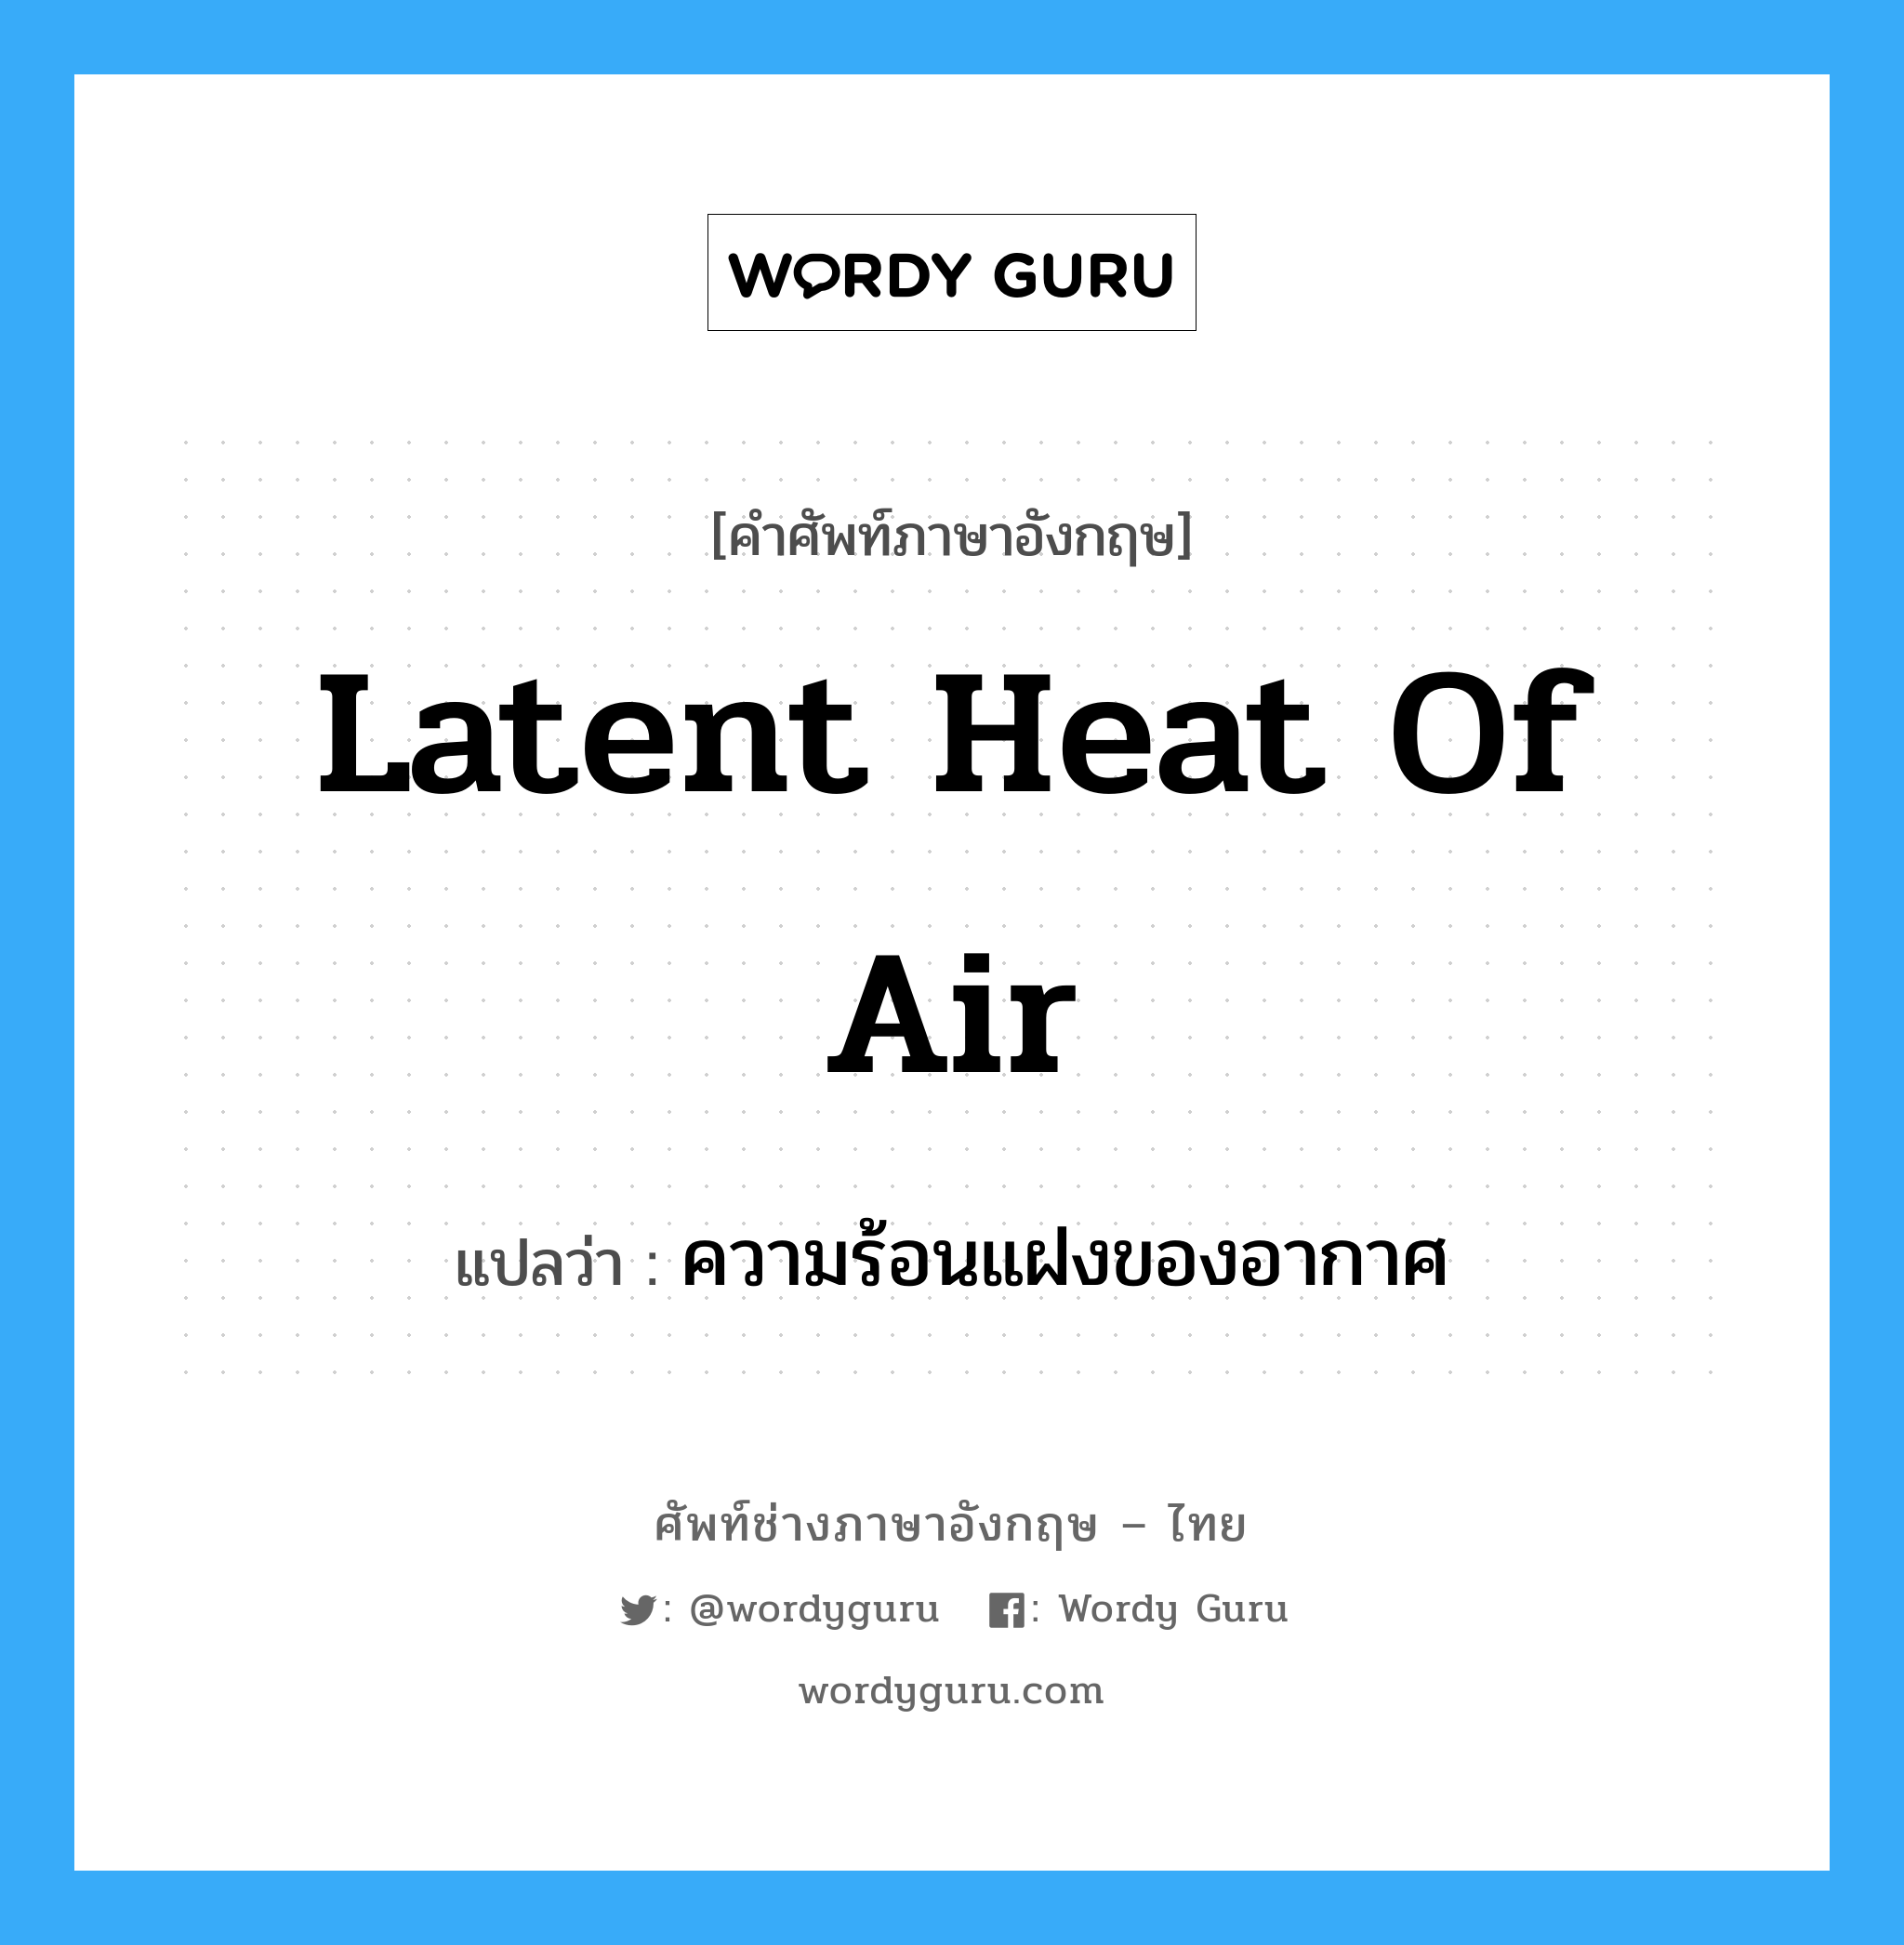 ความร้อนแฝงของอากาศ ภาษาอังกฤษ?, คำศัพท์ช่างภาษาอังกฤษ - ไทย ความร้อนแฝงของอากาศ คำศัพท์ภาษาอังกฤษ ความร้อนแฝงของอากาศ แปลว่า latent heat of air